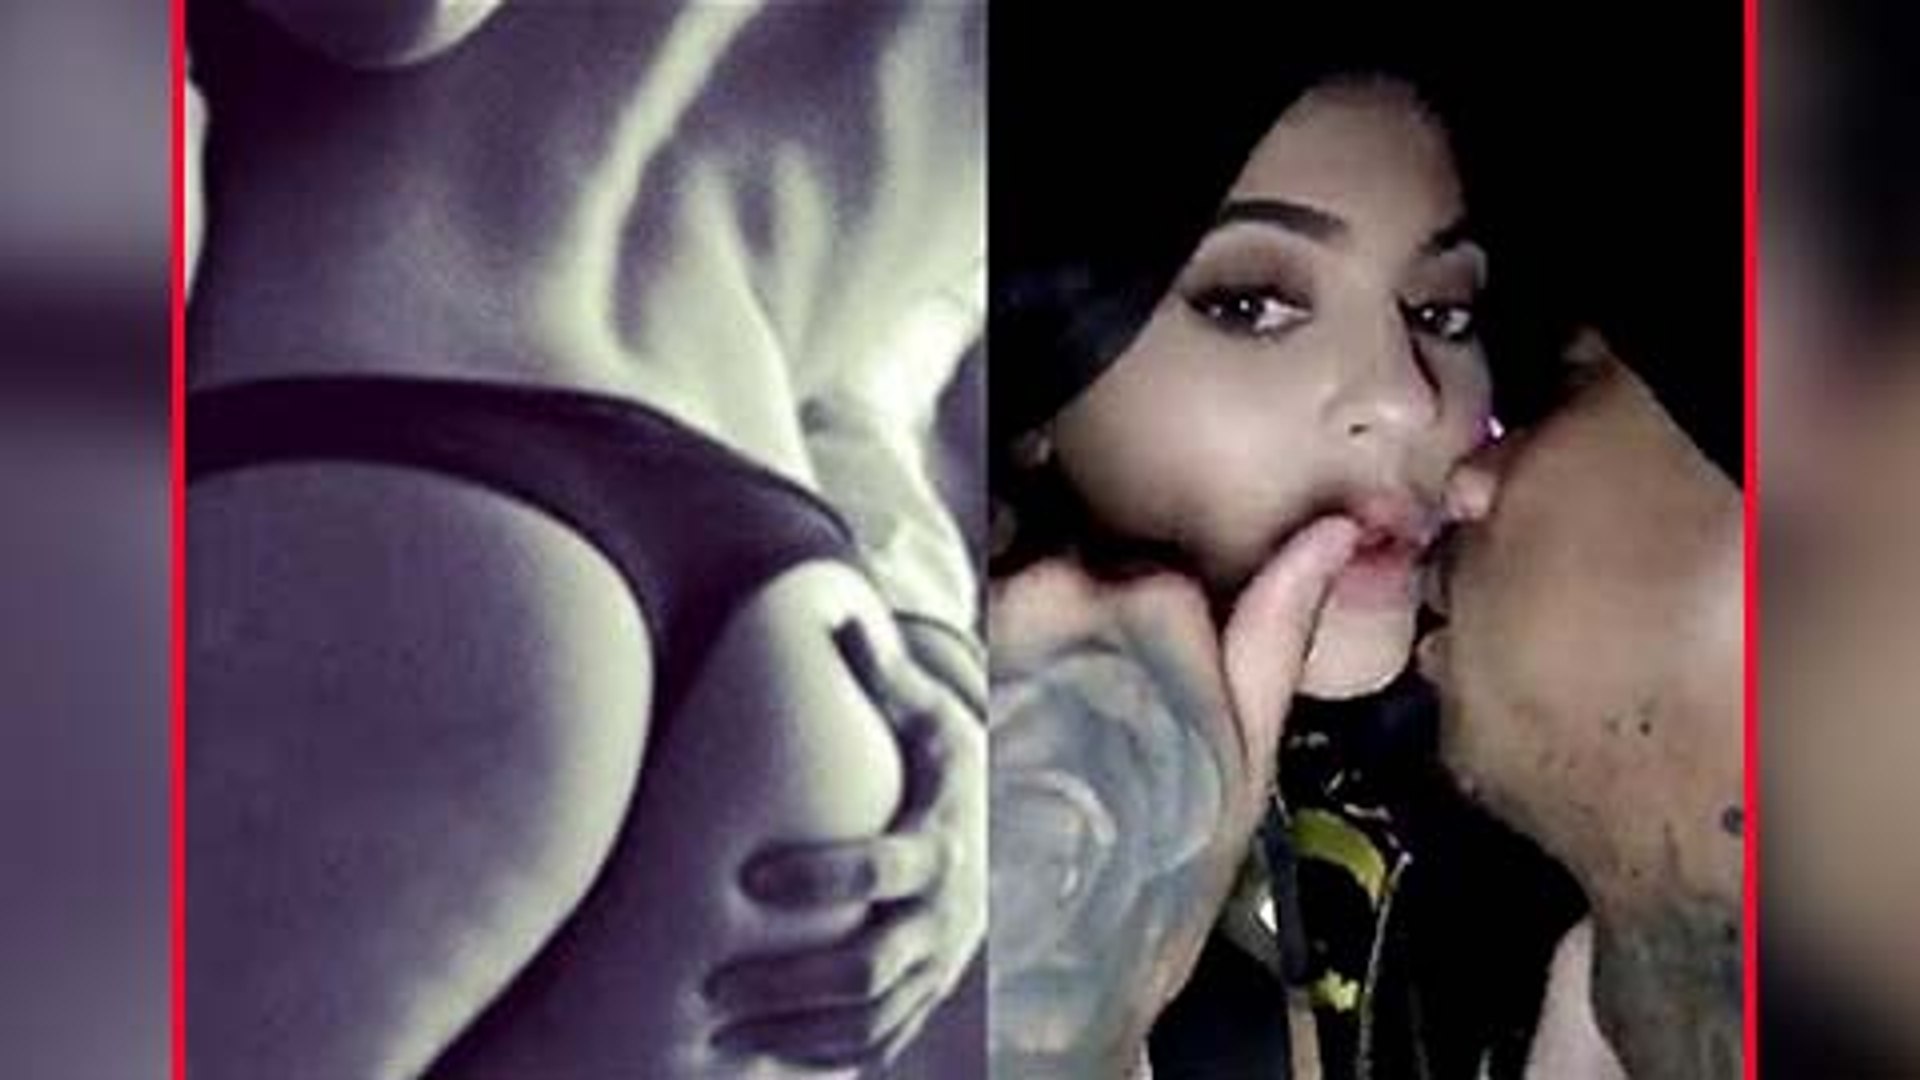 FULL VIDEO: Kylie Jenner & Tyga S. FULL VIDEO: Kylie Jenner & Tyga Sex...